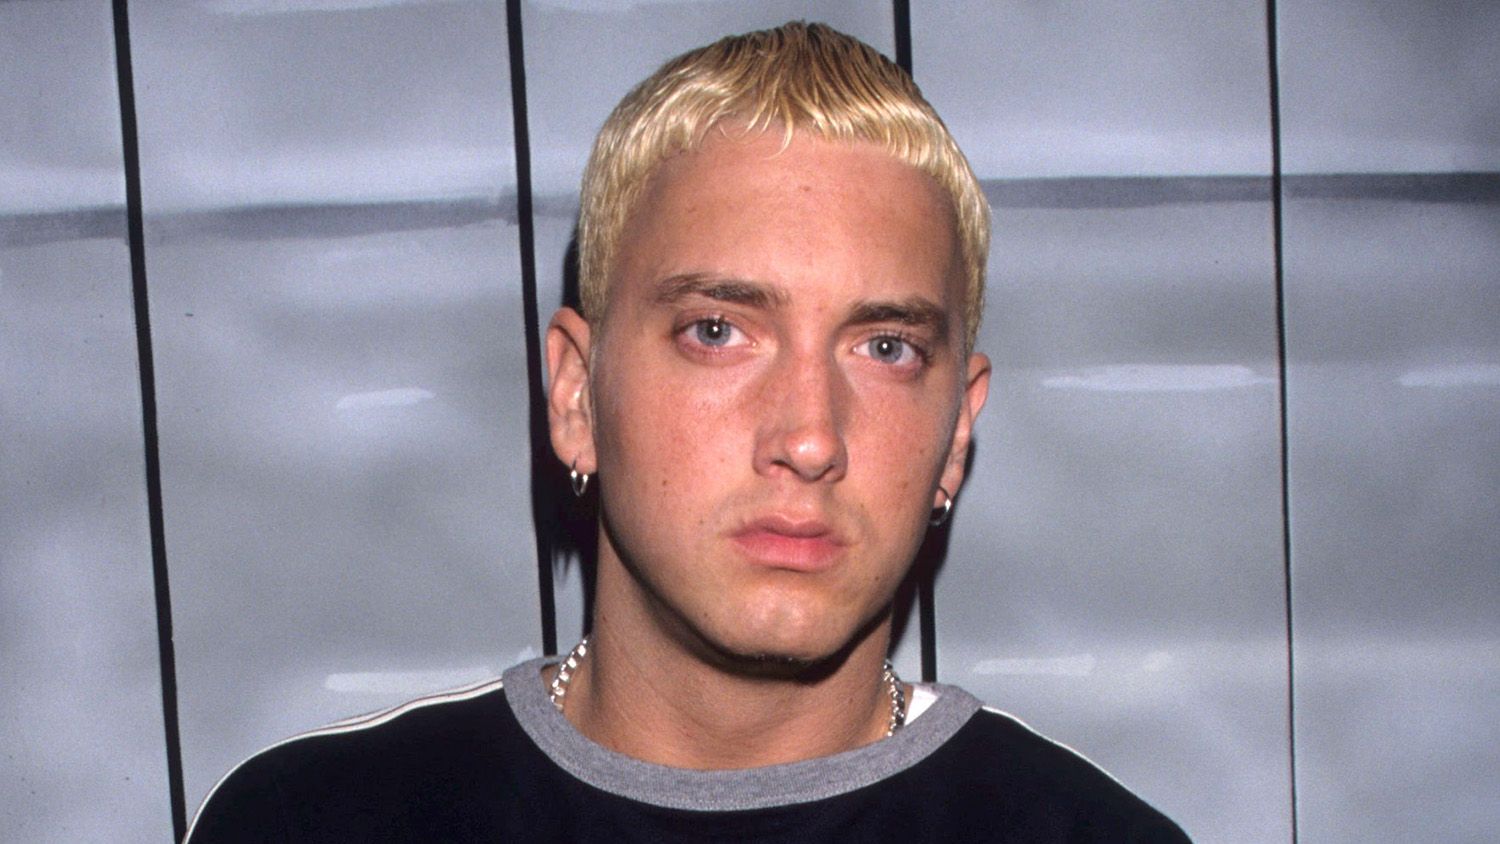 Eminem: A career overview